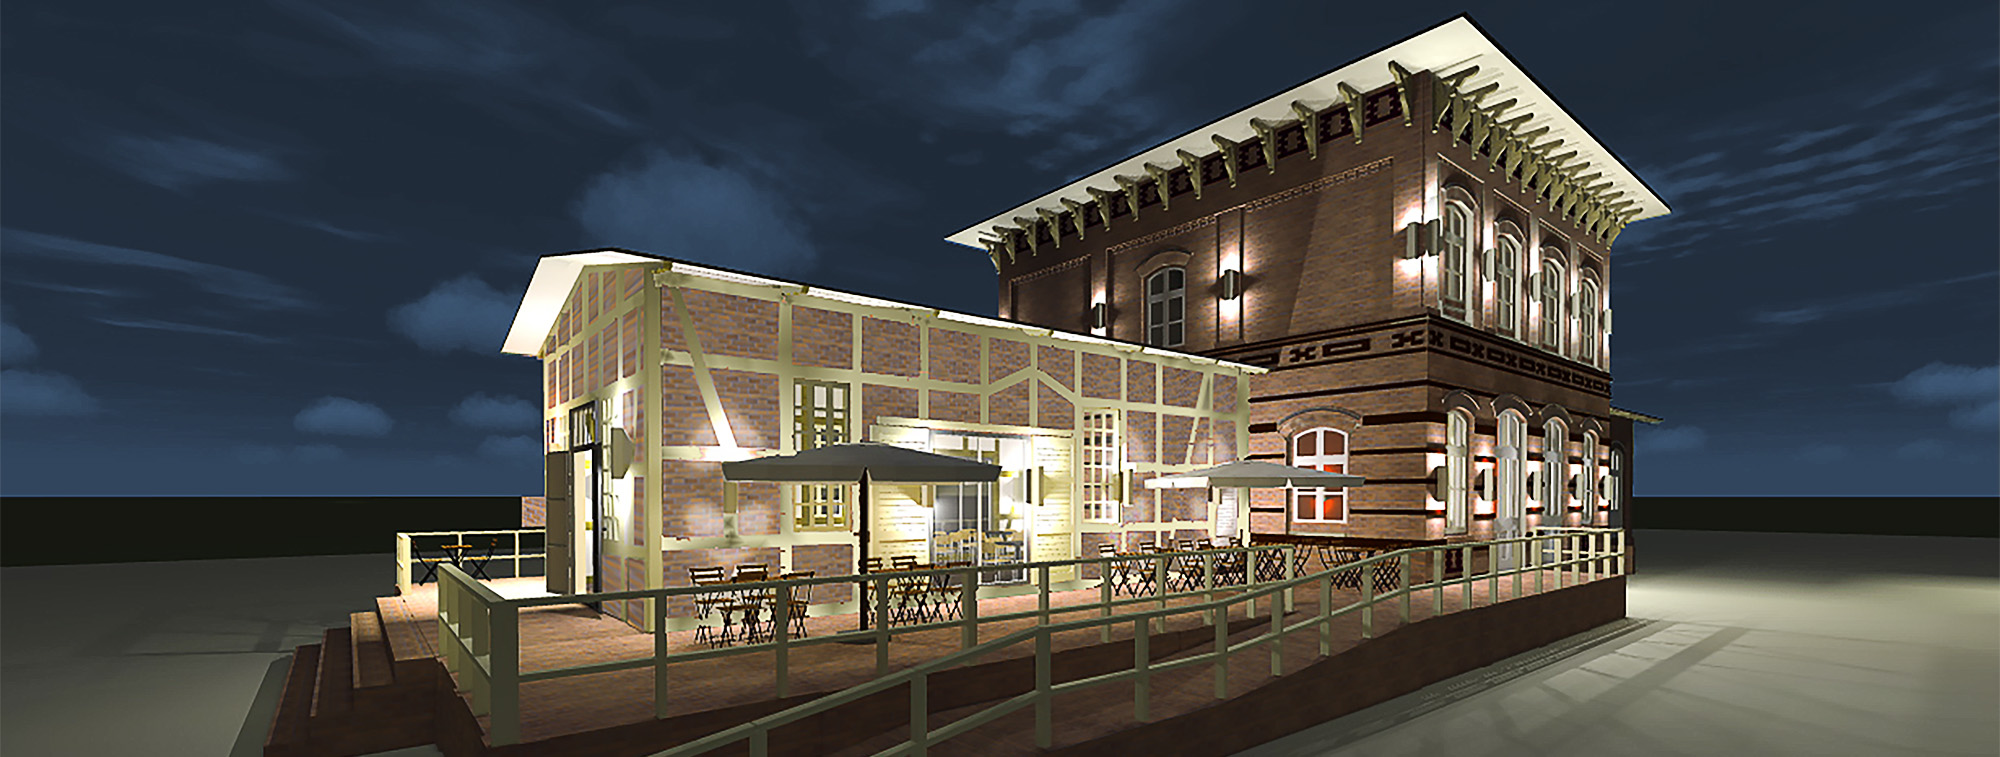 Das Bahnhofsgebäude bei Nacht (Visualisierung)